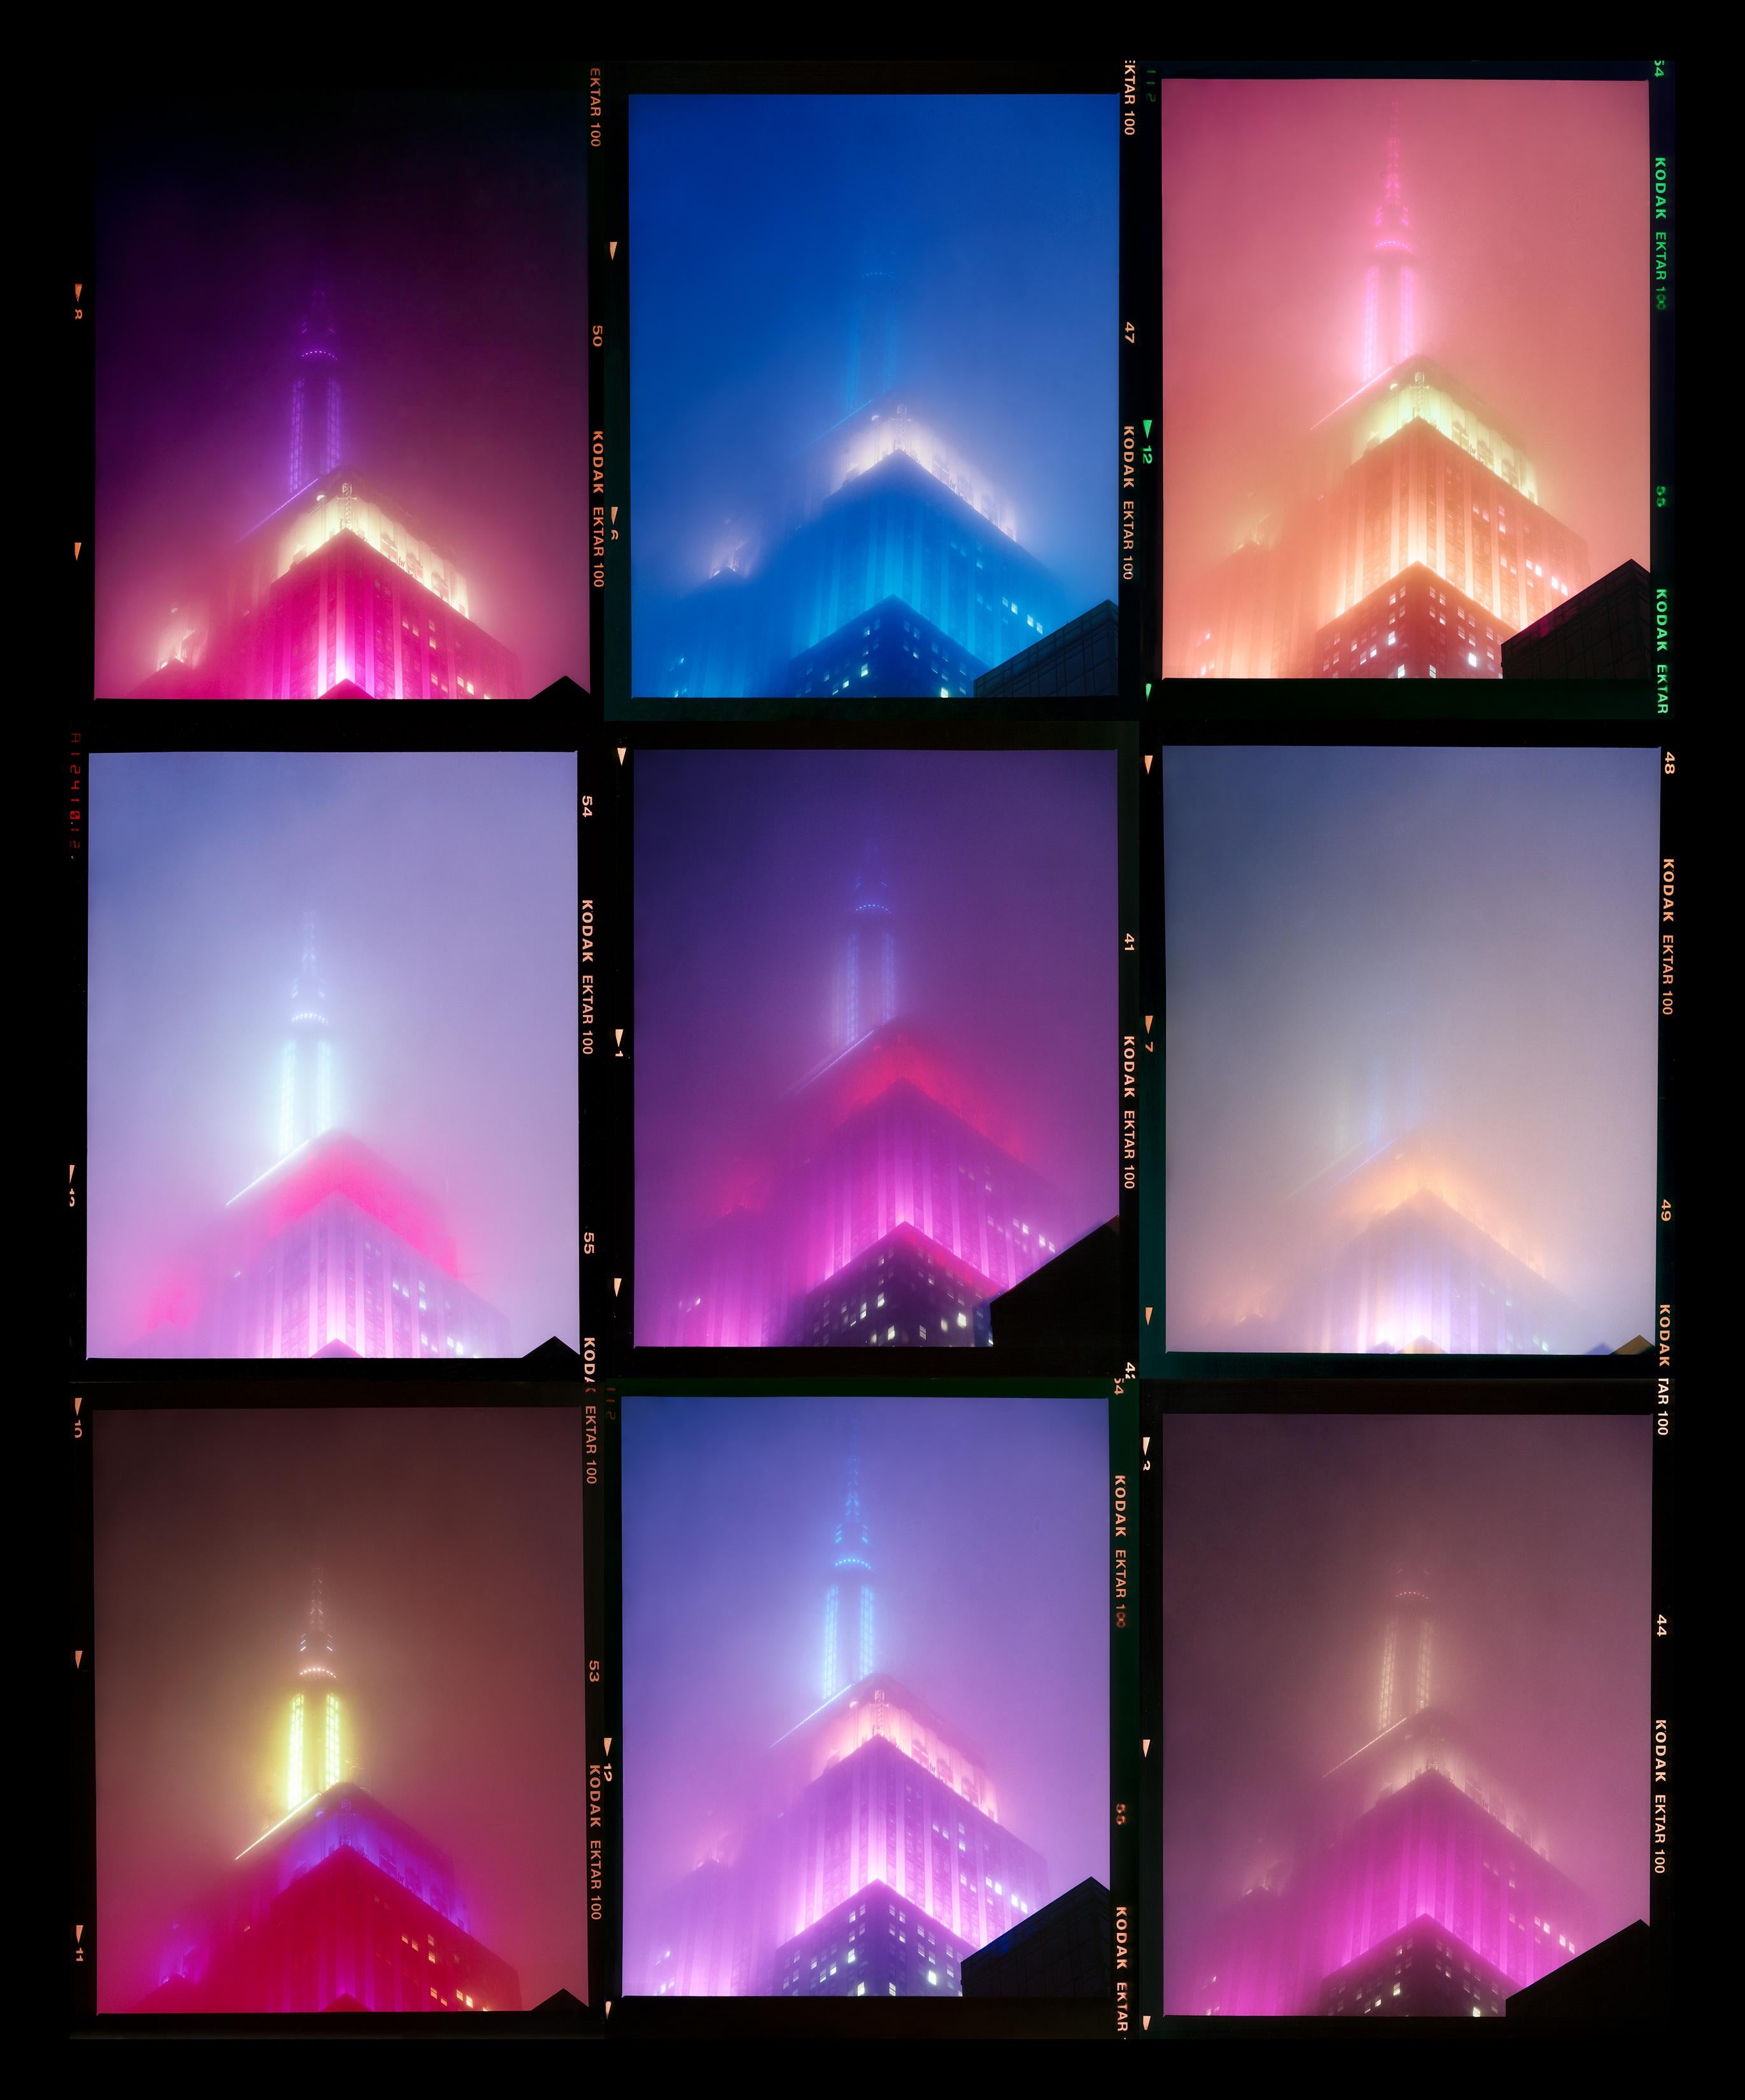 Color Photograph Richard Heeps - NOMAD, New York - Photographie architecturale conceptuelle en couleur